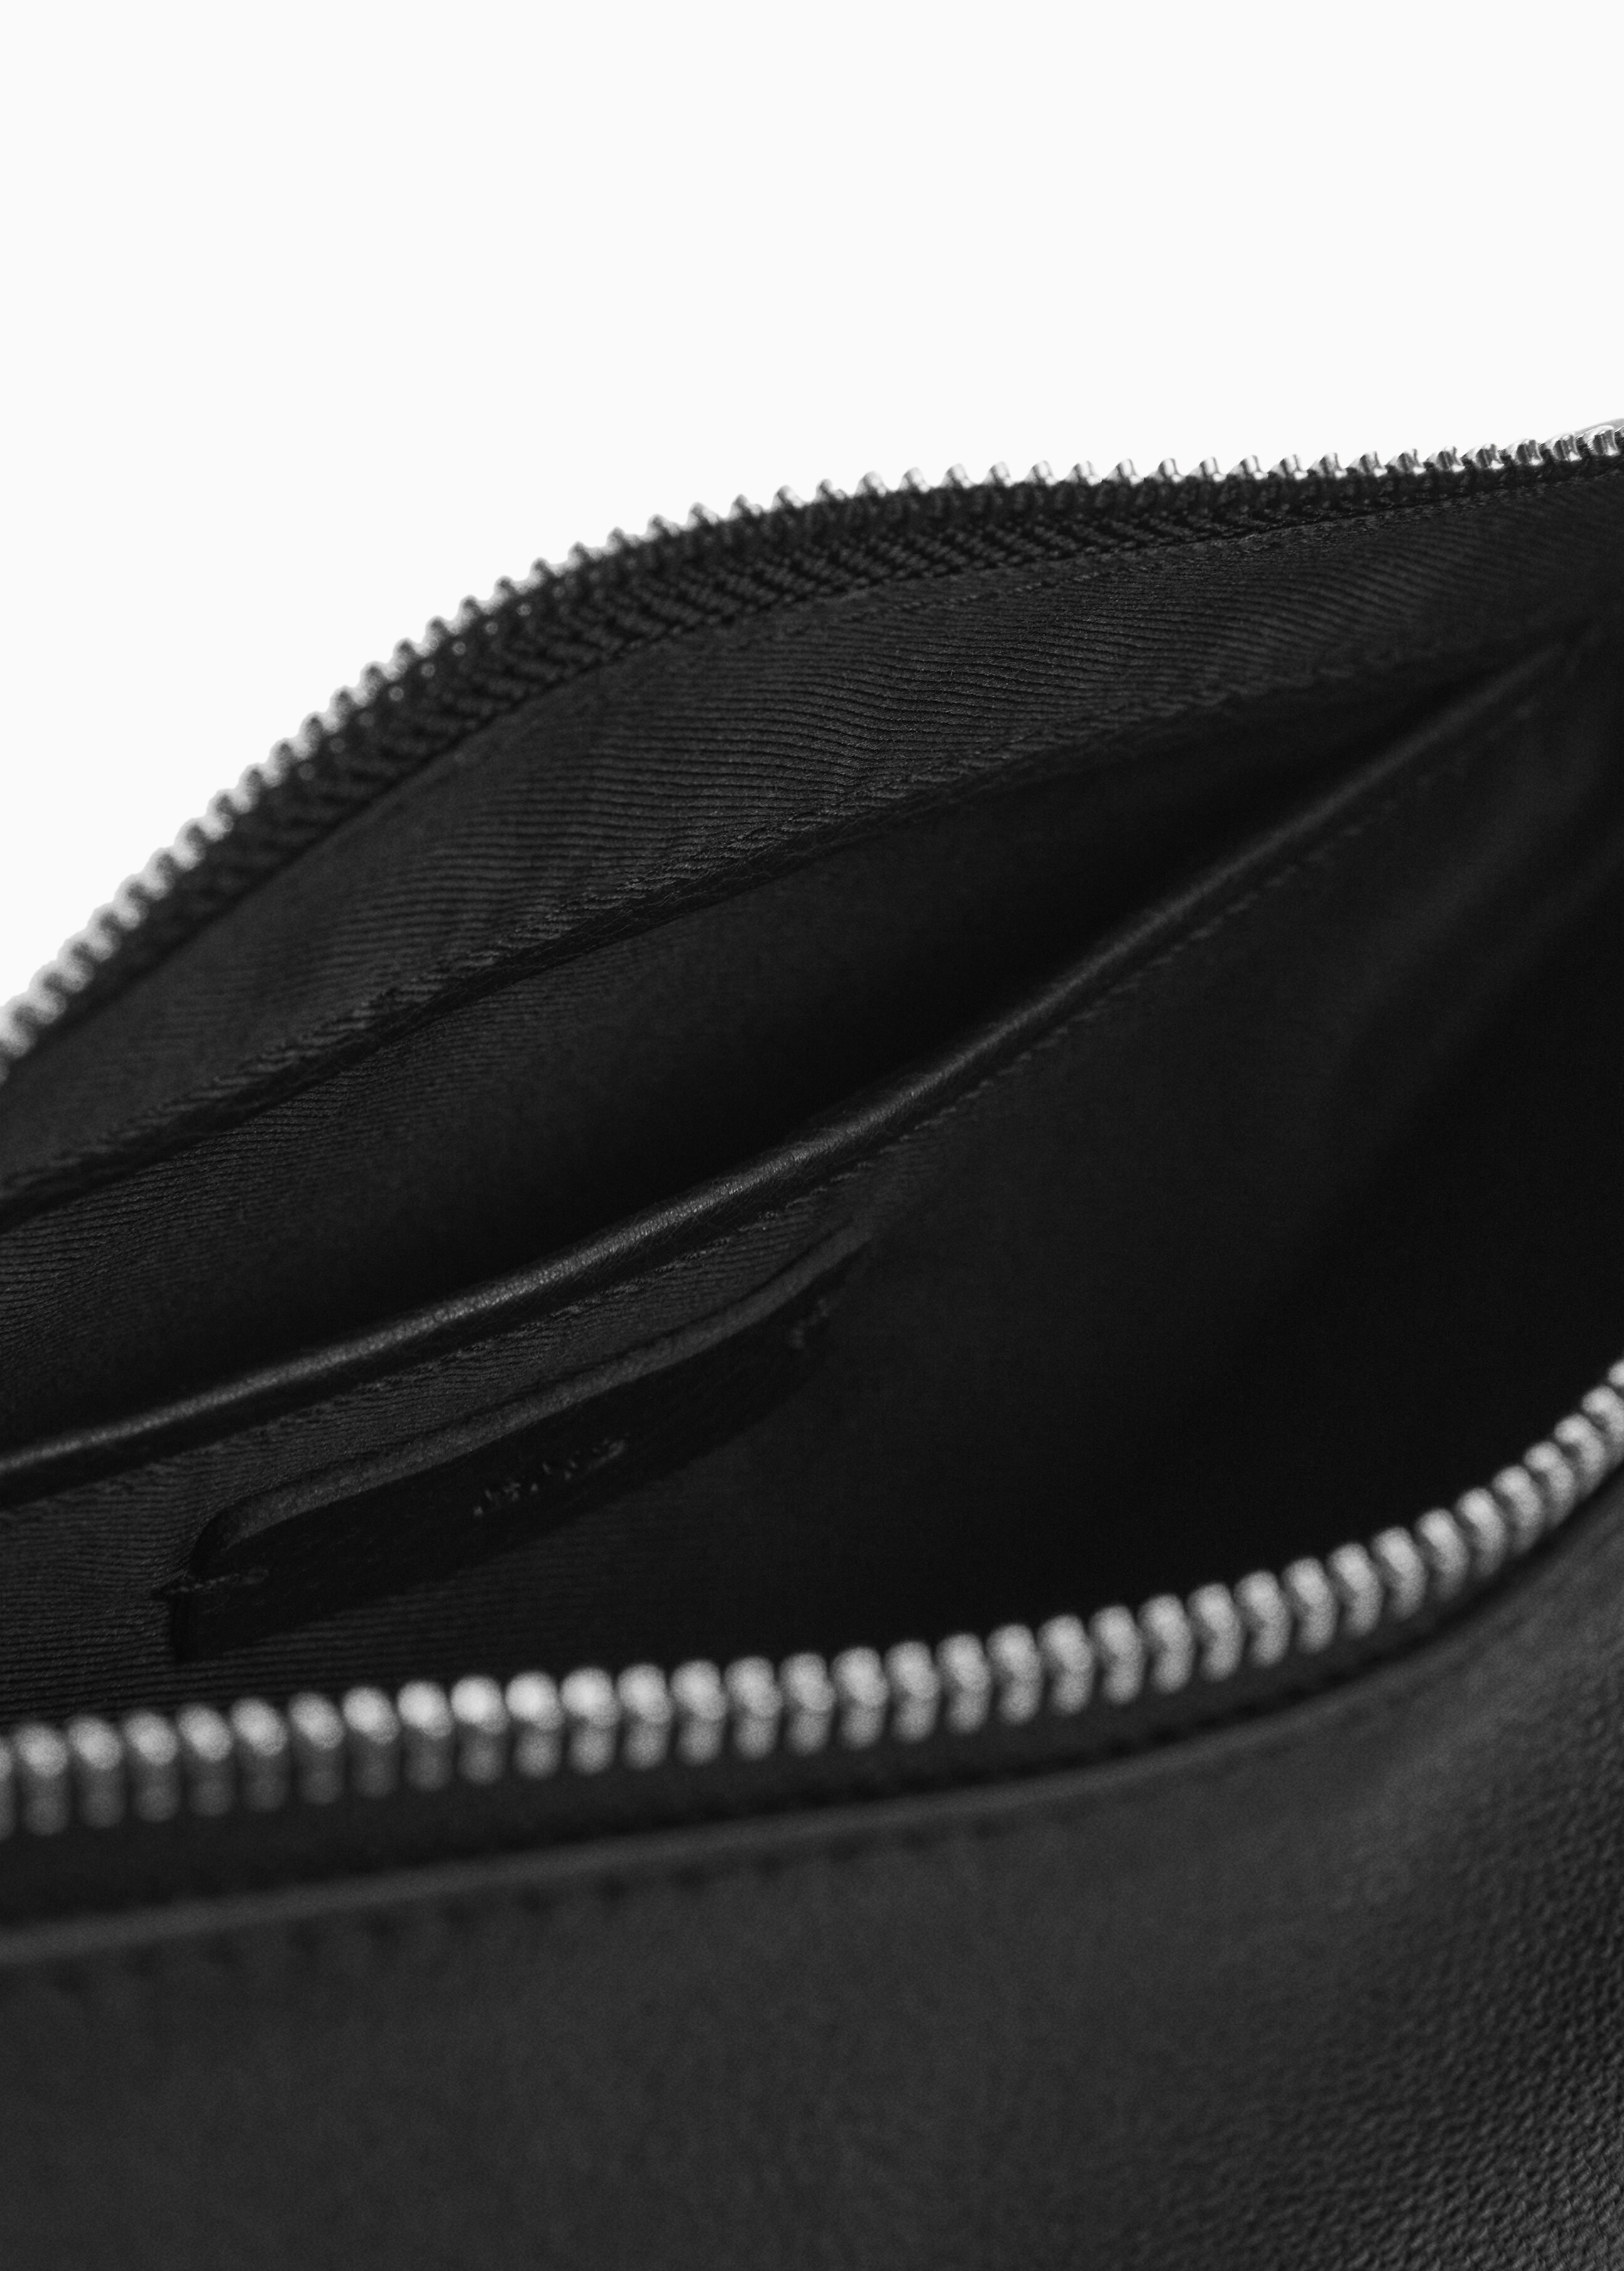 Leather shoulder bag - Details of the article 2